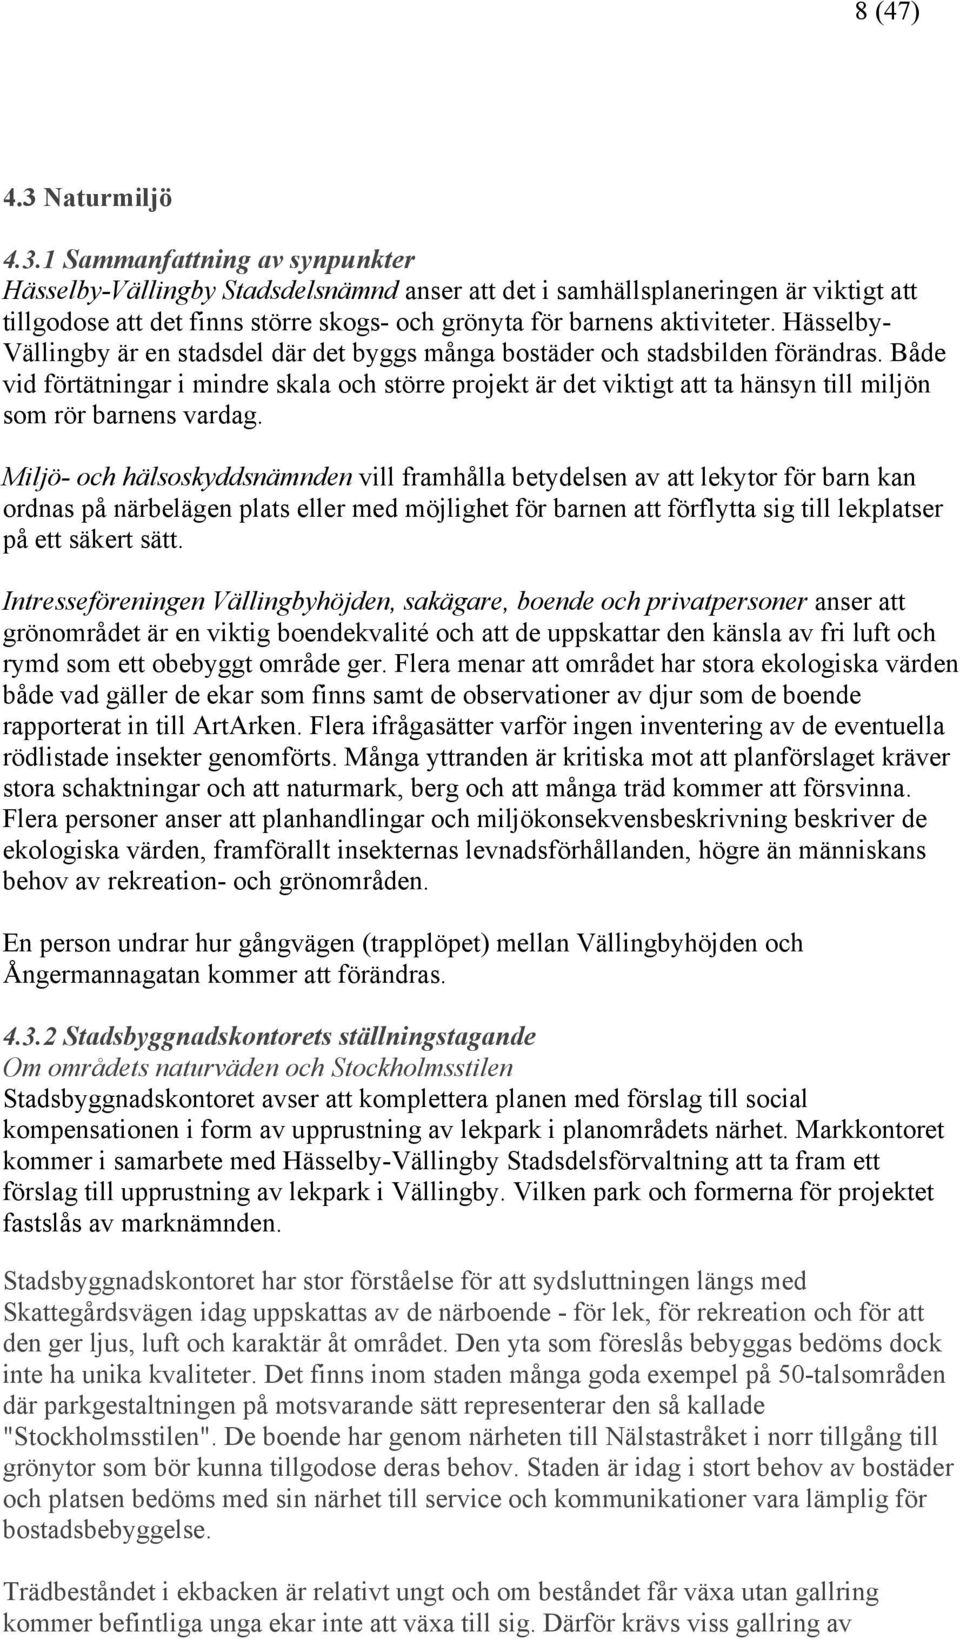 1 Sammanfattning av synpunkter Hässelby-Vällingby Stadsdelsnämnd anser att det i samhällsplaneringen är viktigt att tillgodose att det finns större skogs- och grönyta för barnens aktiviteter.